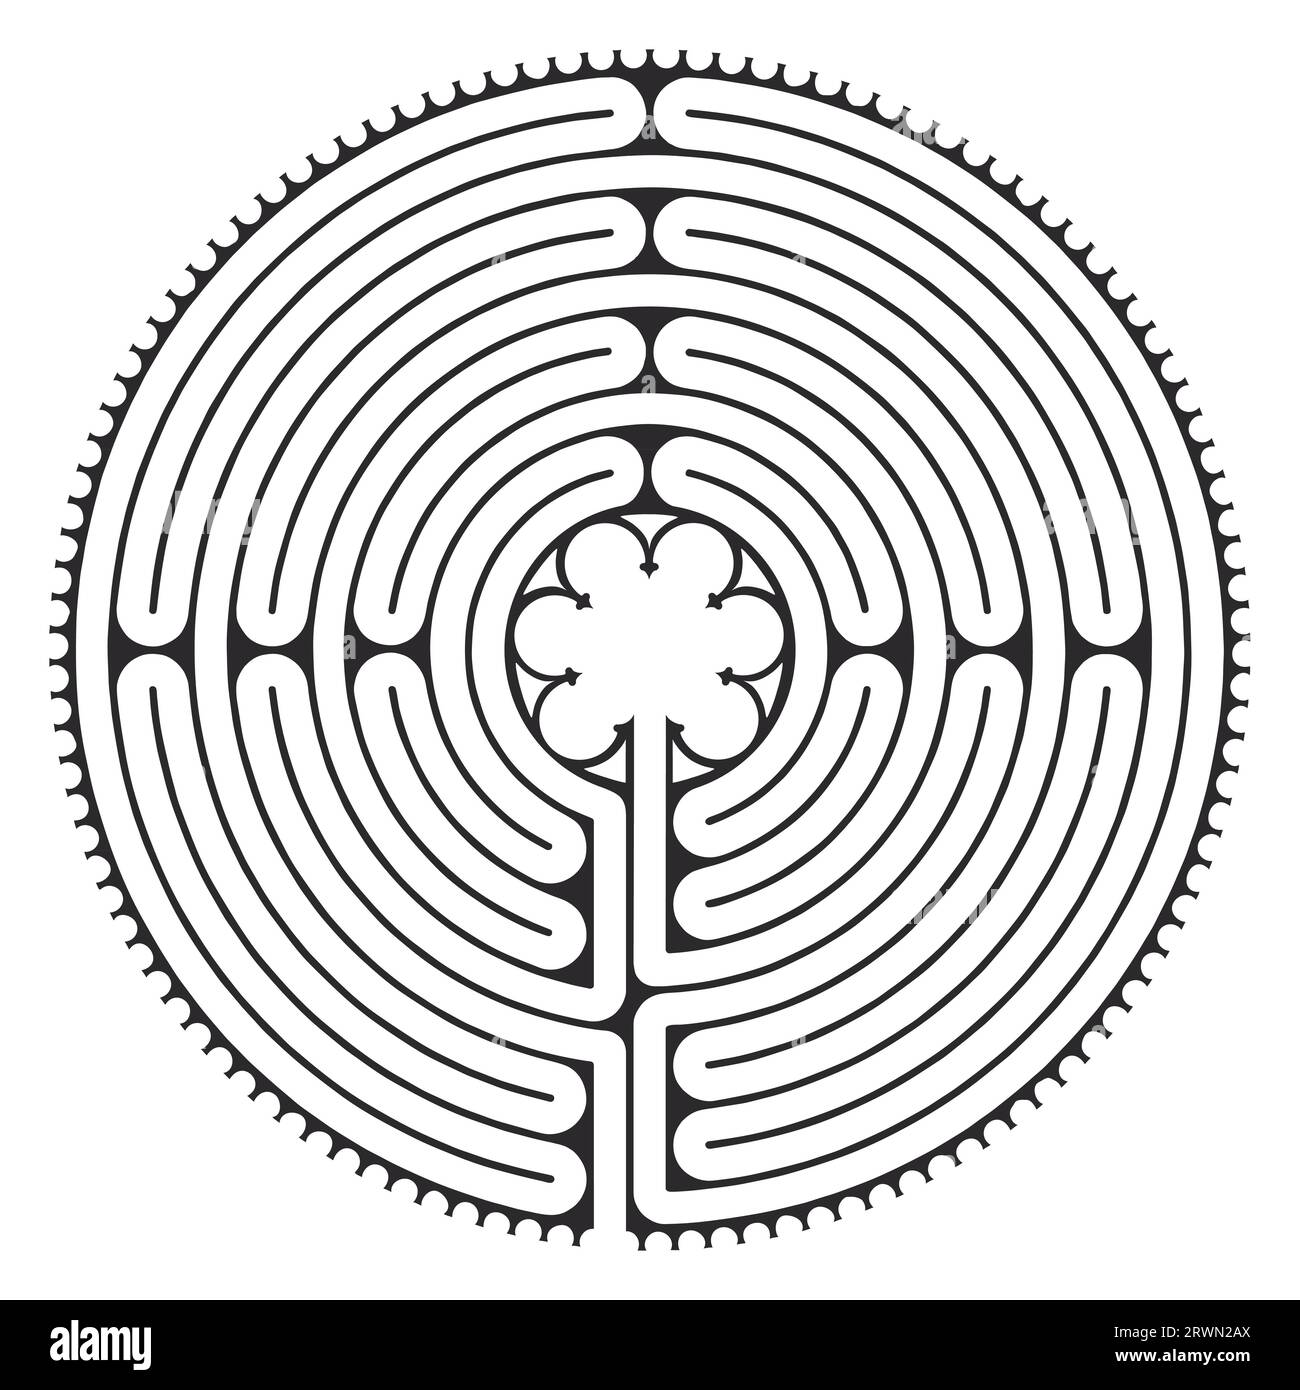 Labyrinth Kathedrale von Chartres Illustration Vektor - Symbolismus Meditationsgeschichte - Blumenmotiv - Heilige Geometrie Schwarz-weiß-Farben Stock Vektor